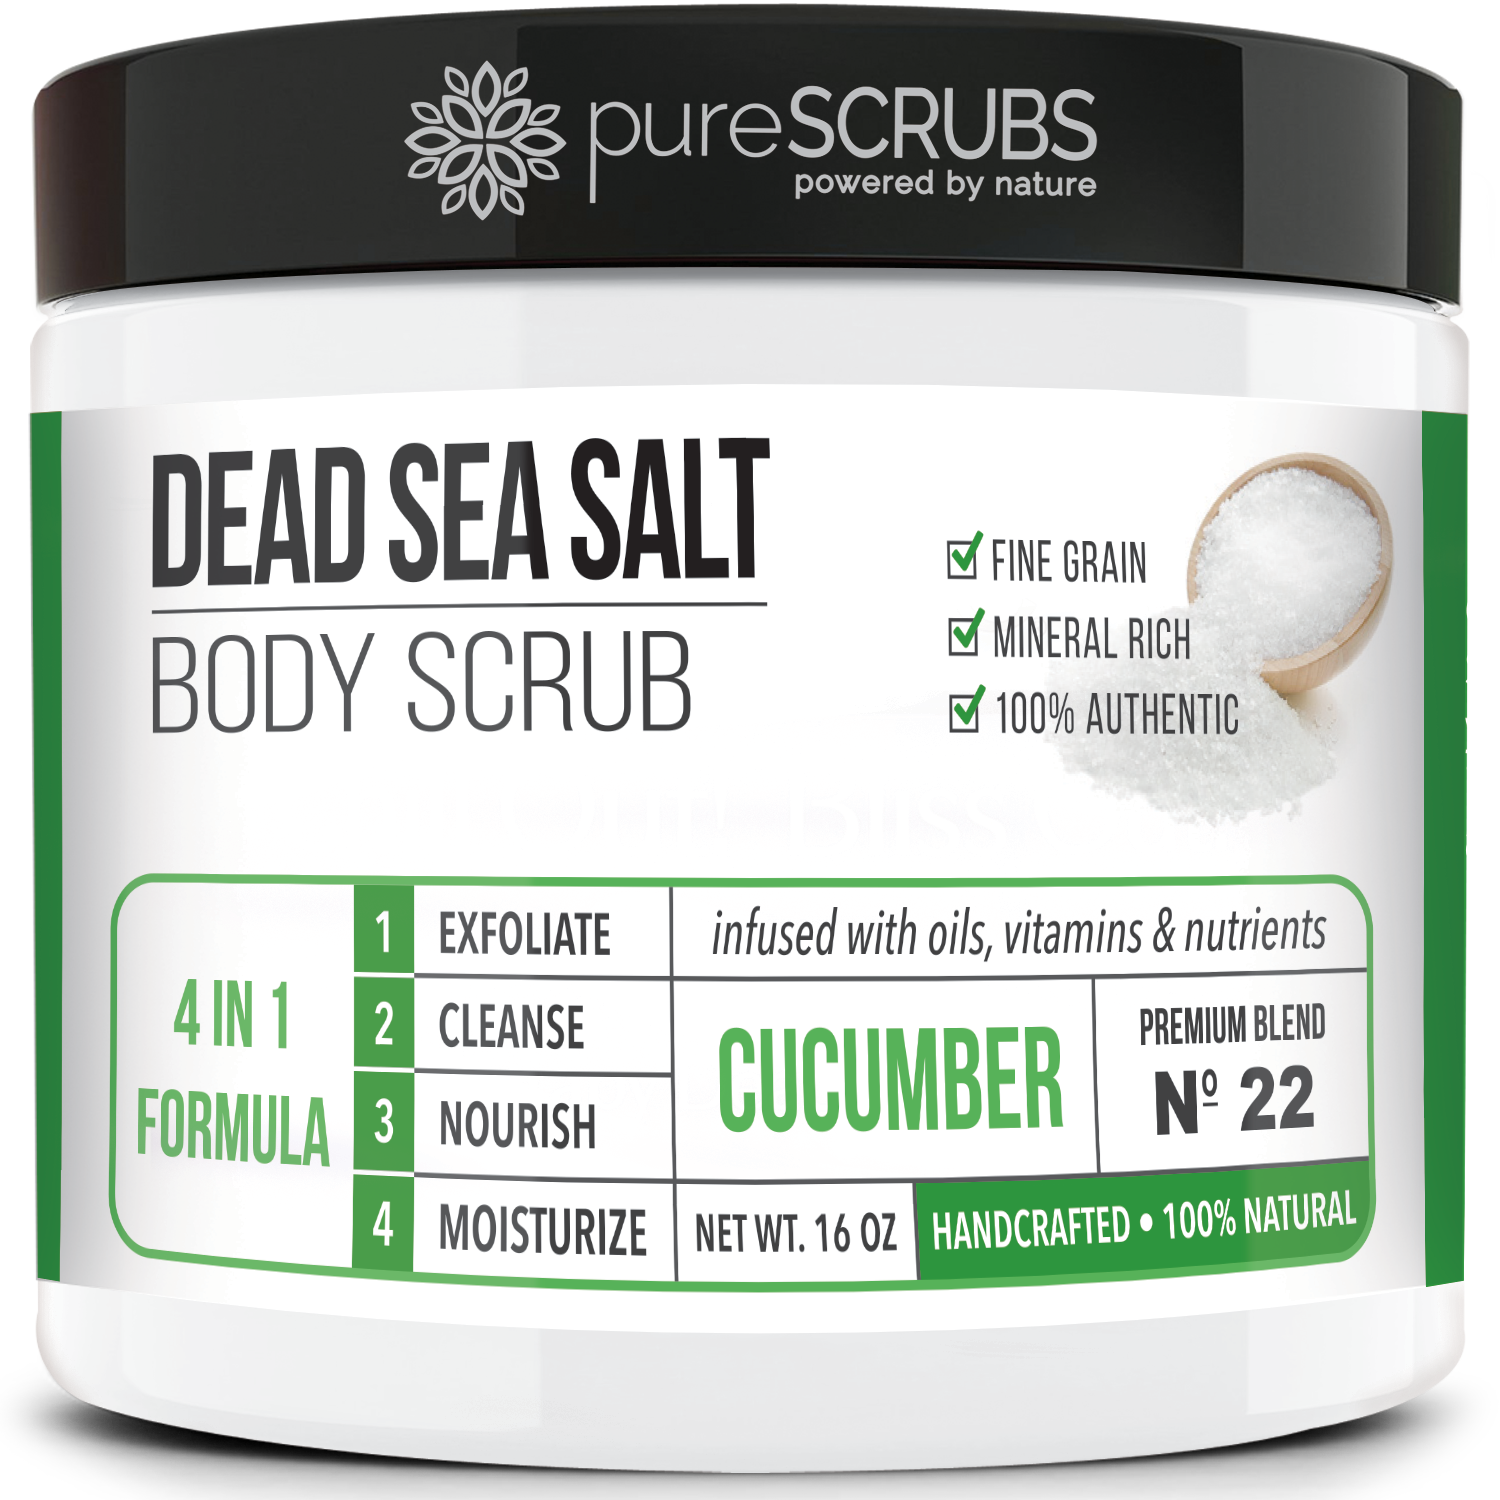 Cucumber Body Scrub / Dead Sea Salt / Premium Blend #22